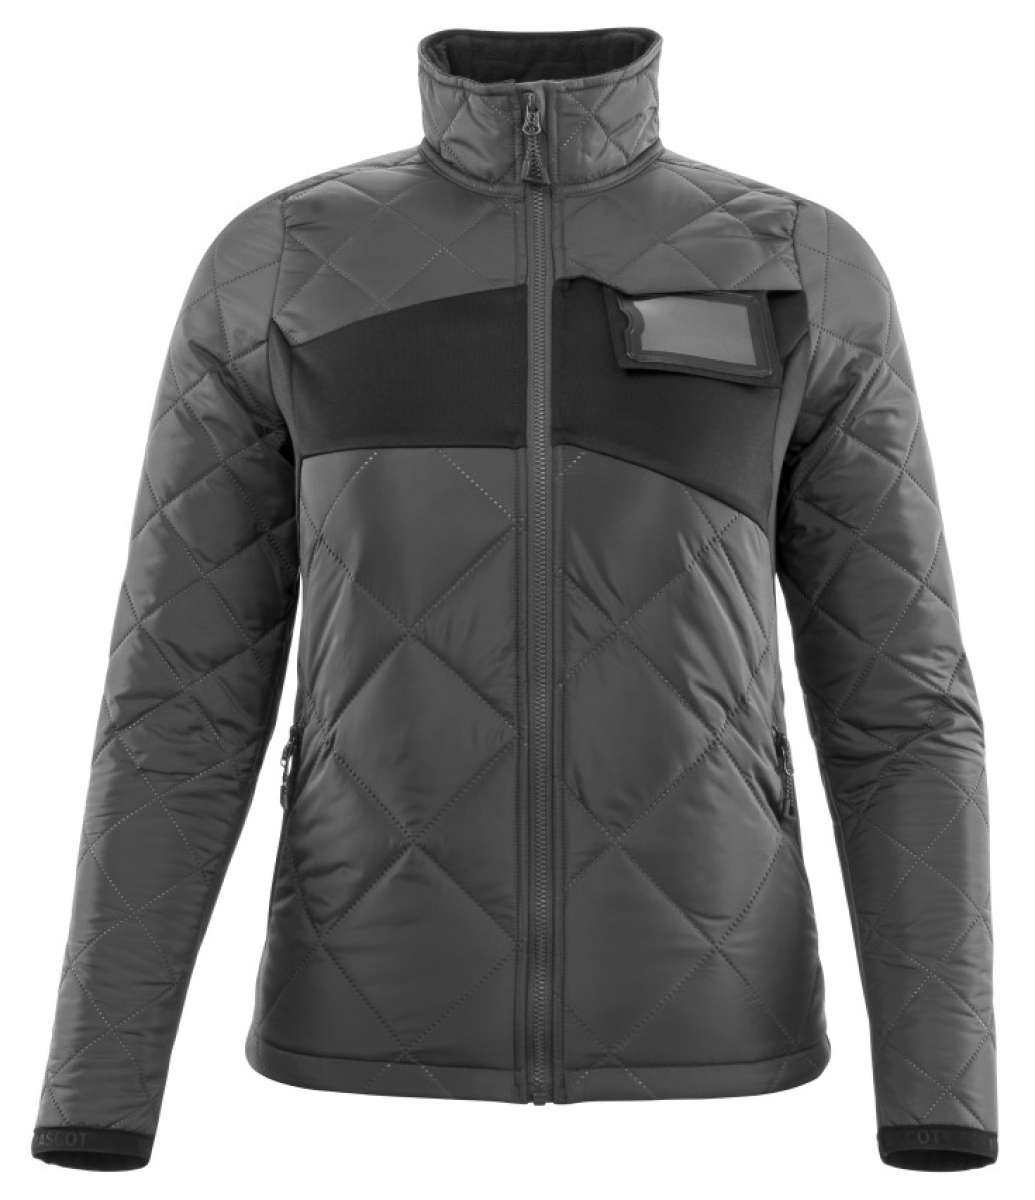 MASCOT-Workwear, Klteschutz, Damen Winterjacke, 260 g/m, dunkelanthrazit/schwarz